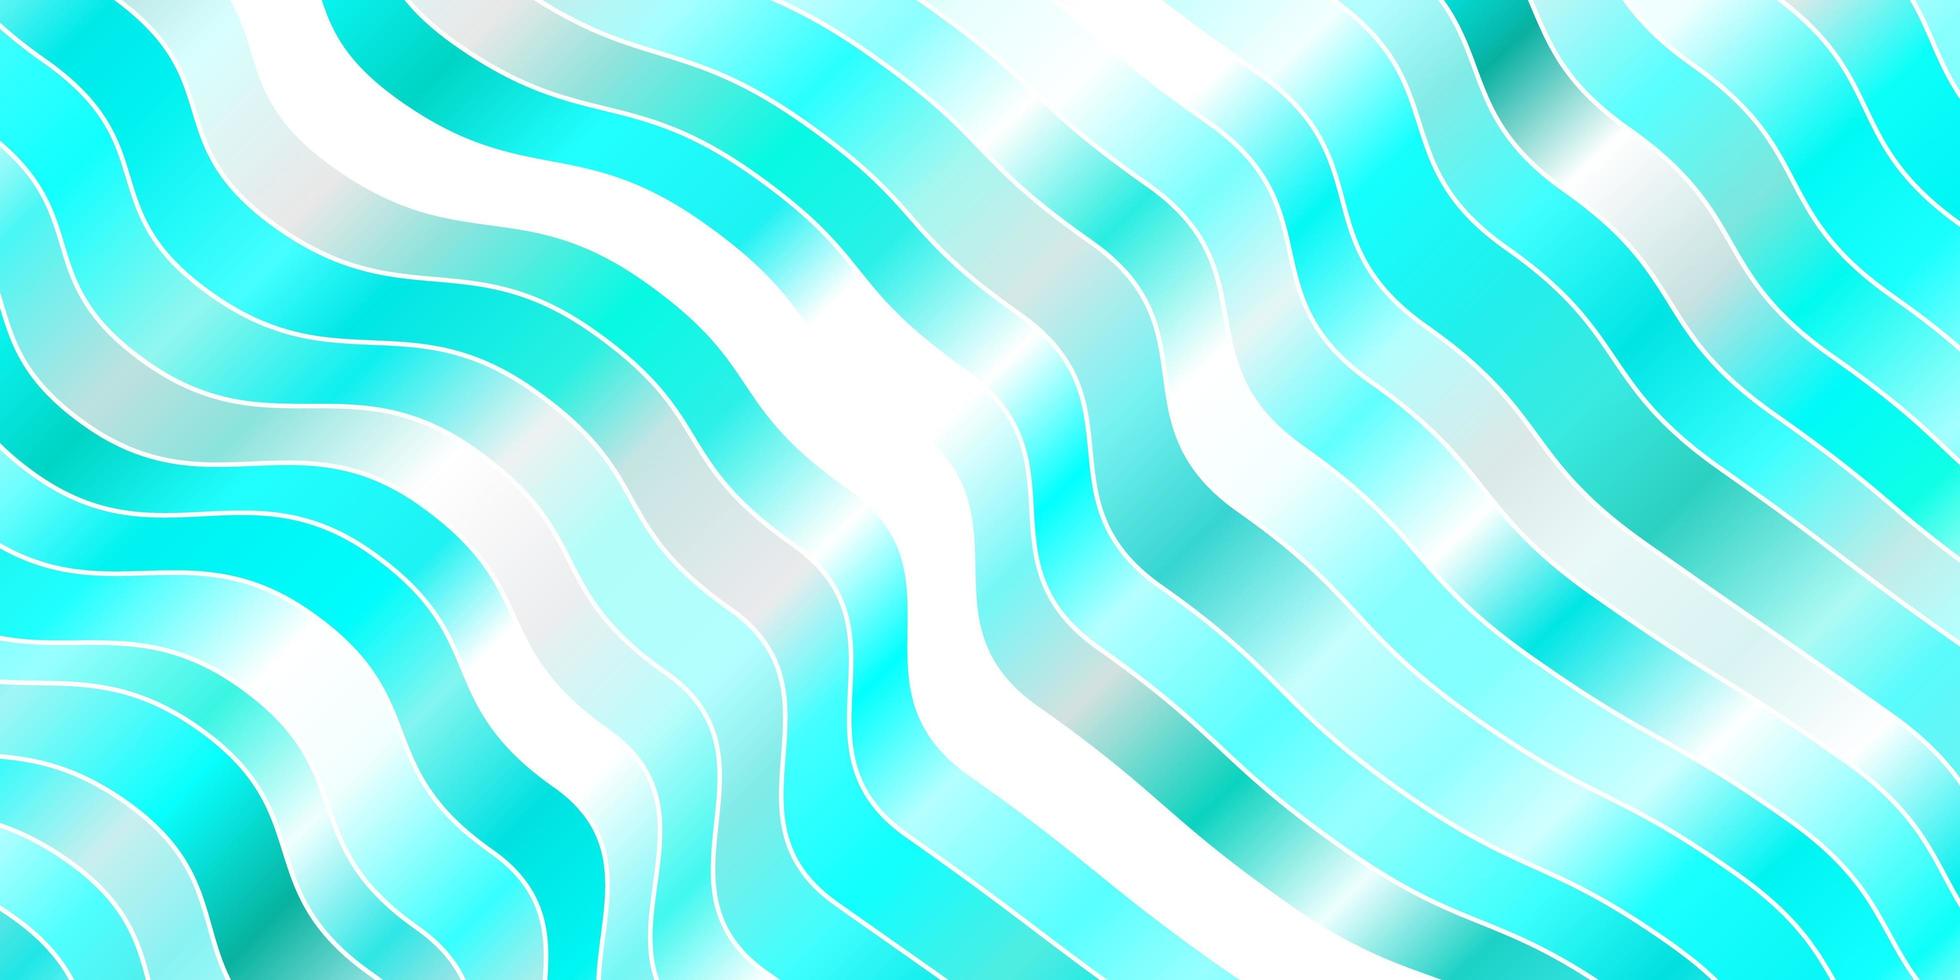 Hellblaue Vektortextur mit Kurven, farbenfrohe Illustration im kreisförmigen Stil mit Linienmuster für Websites vektor